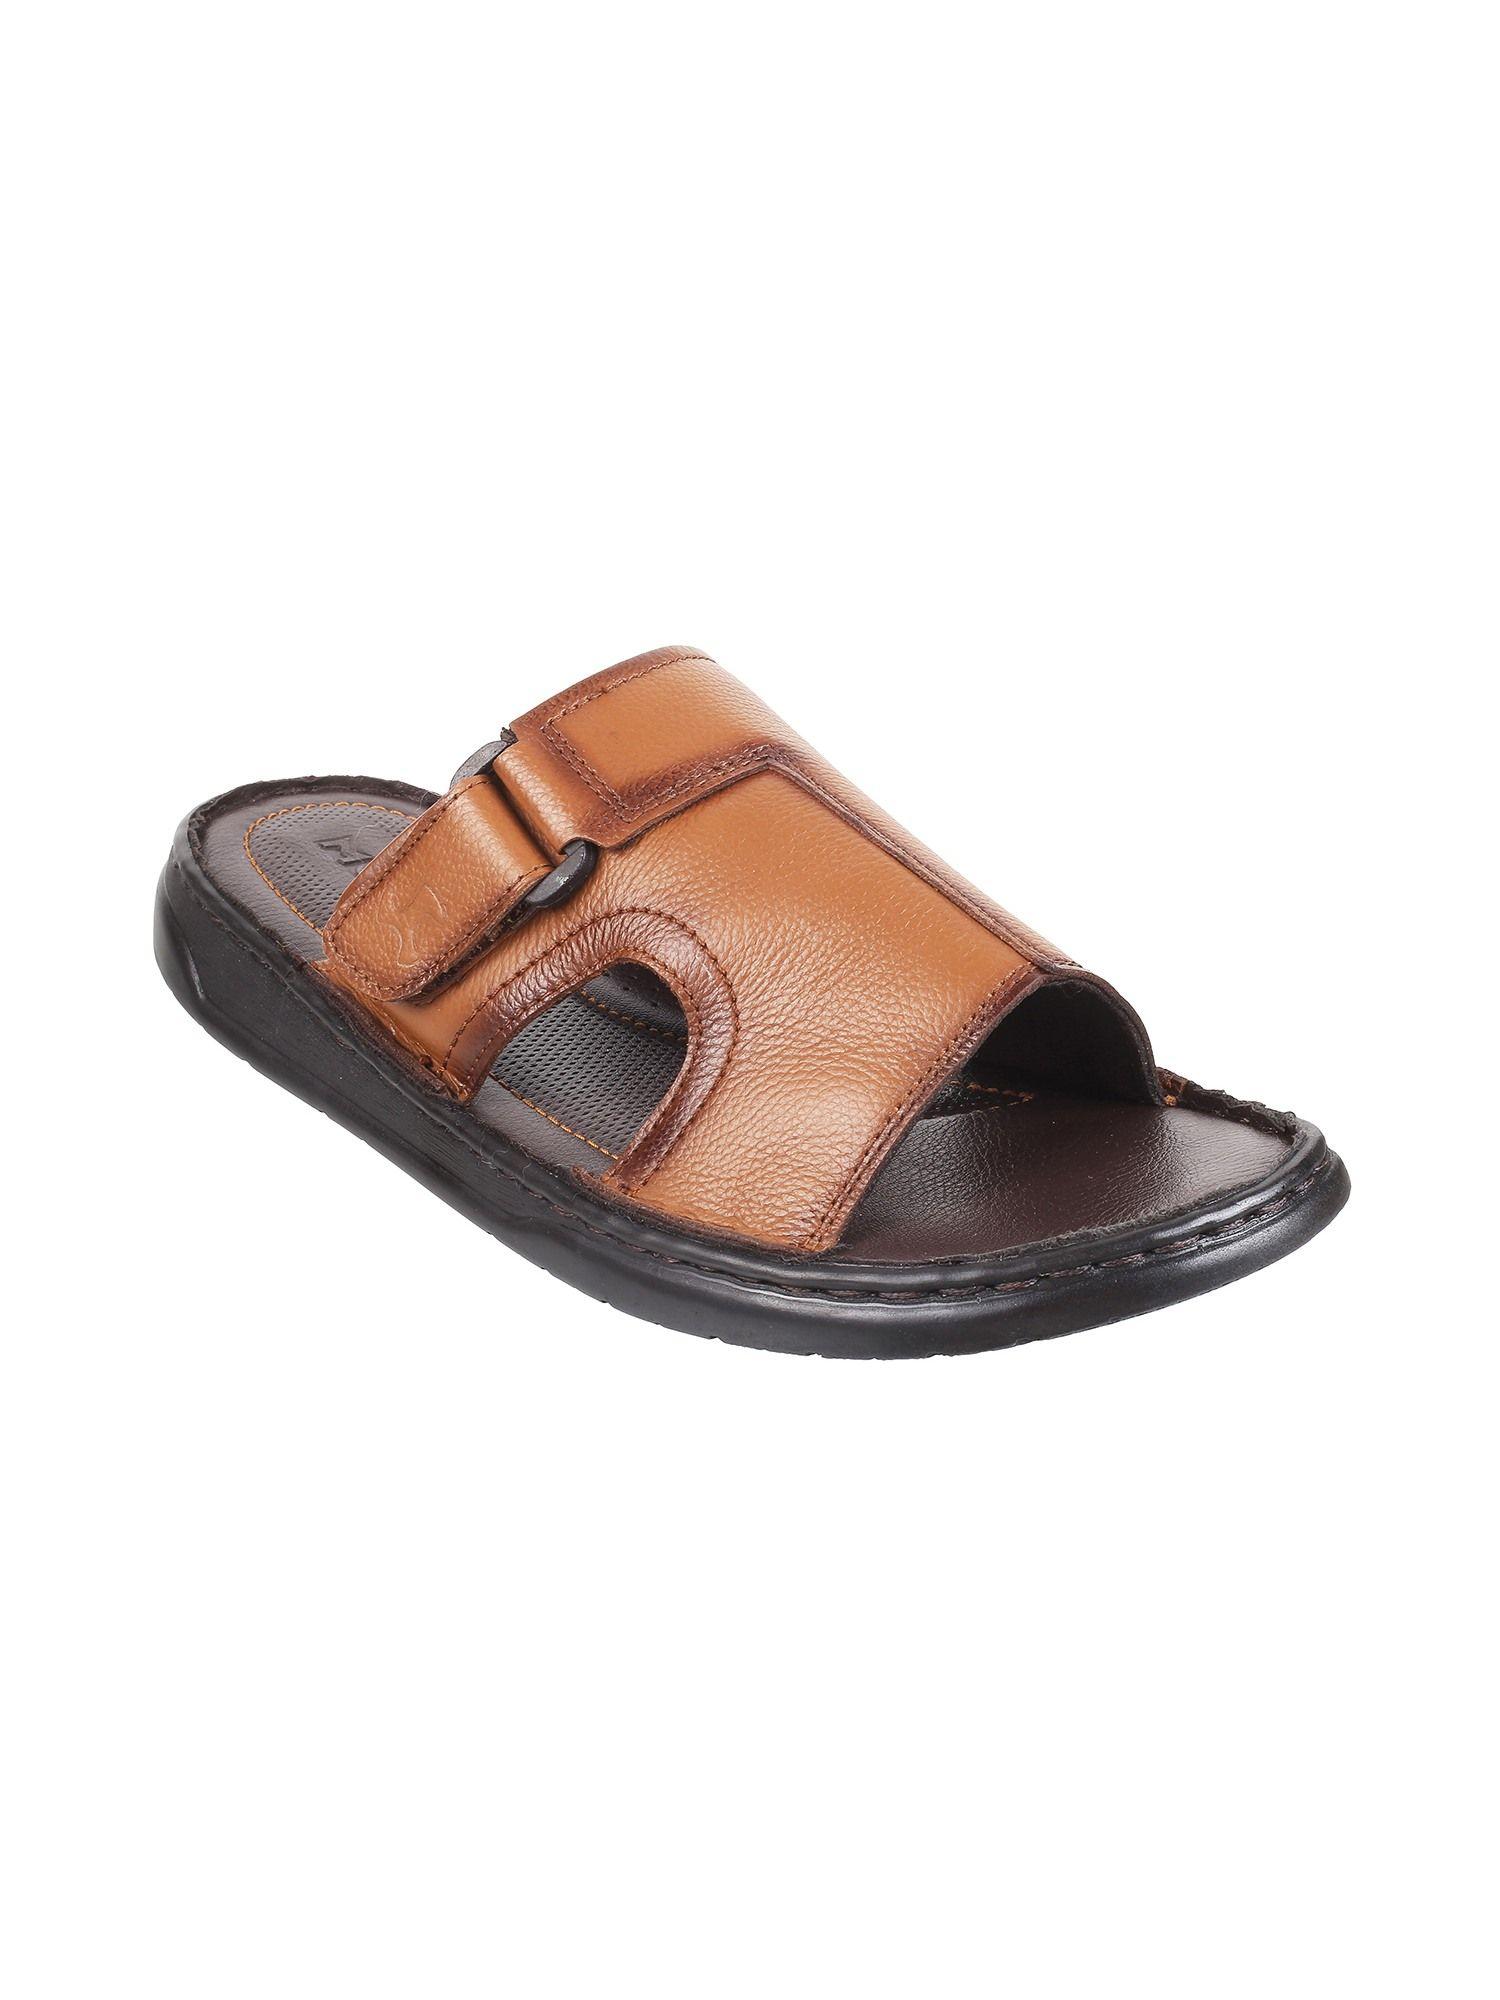 mens tan flat chappalsmochi men tan leather sandals